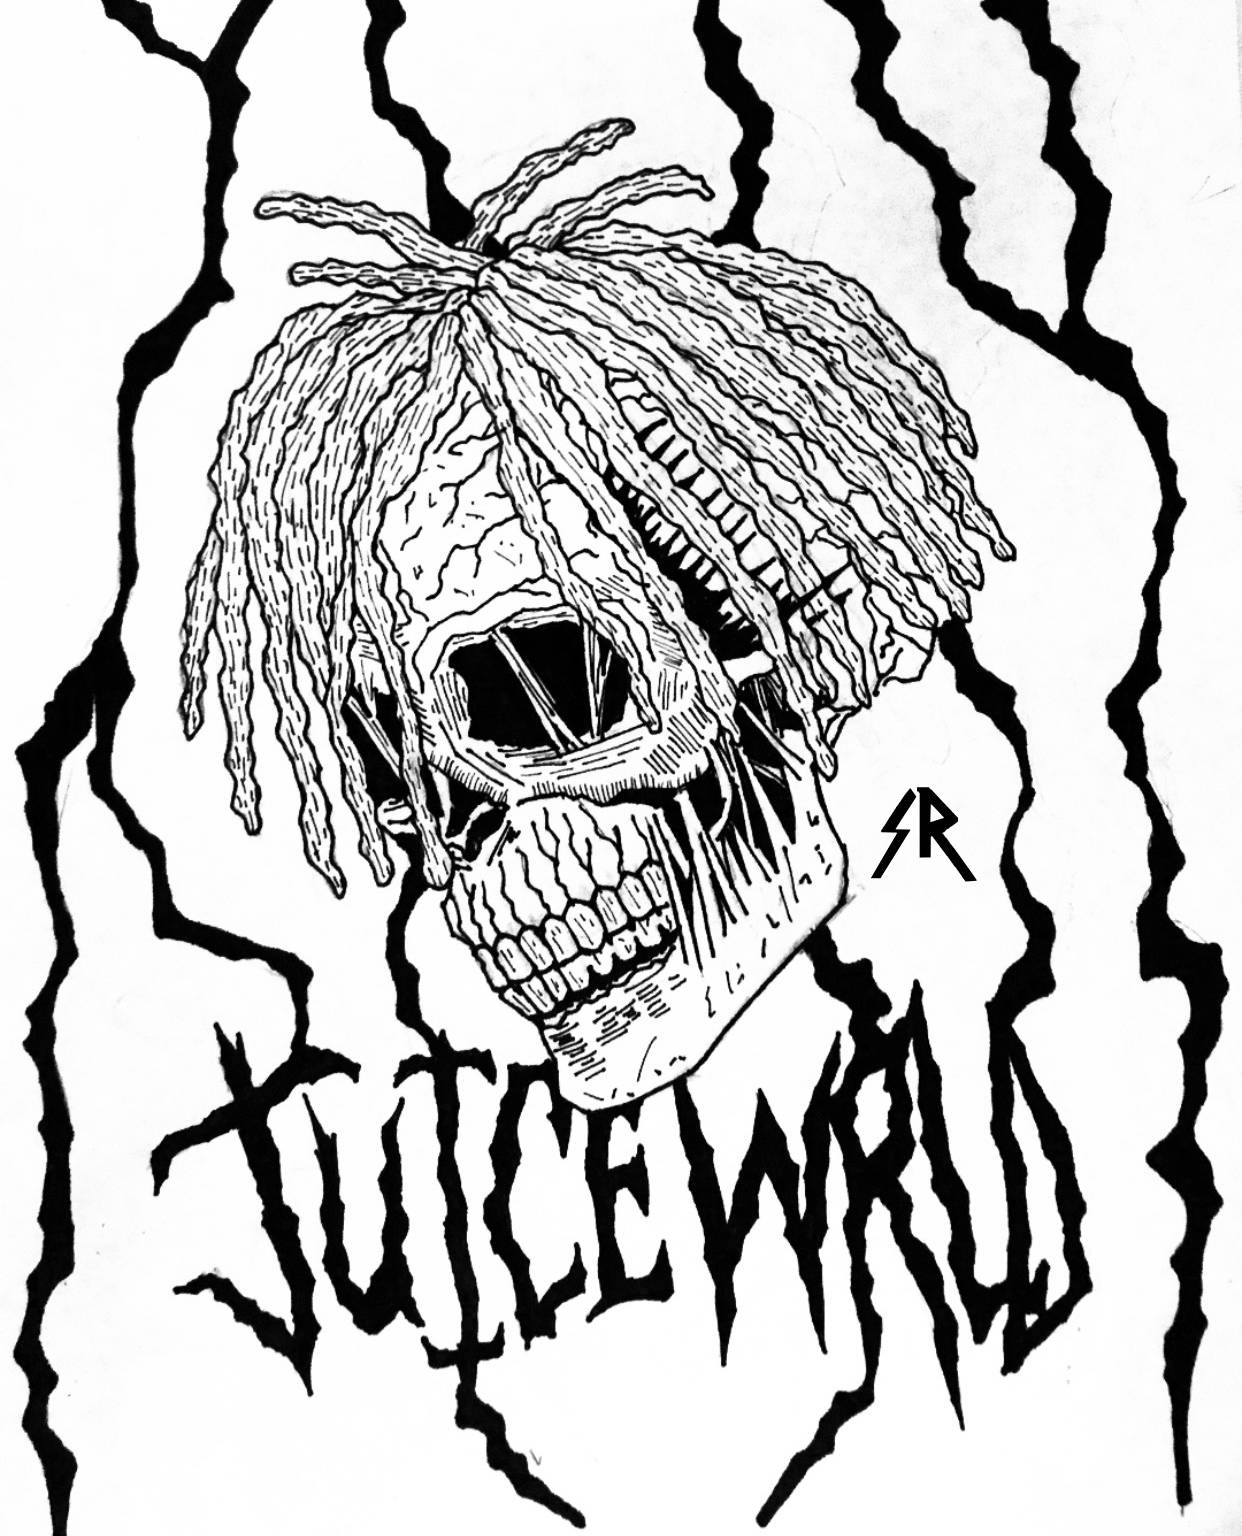 Juice Wrld 999 Skull Logo Background